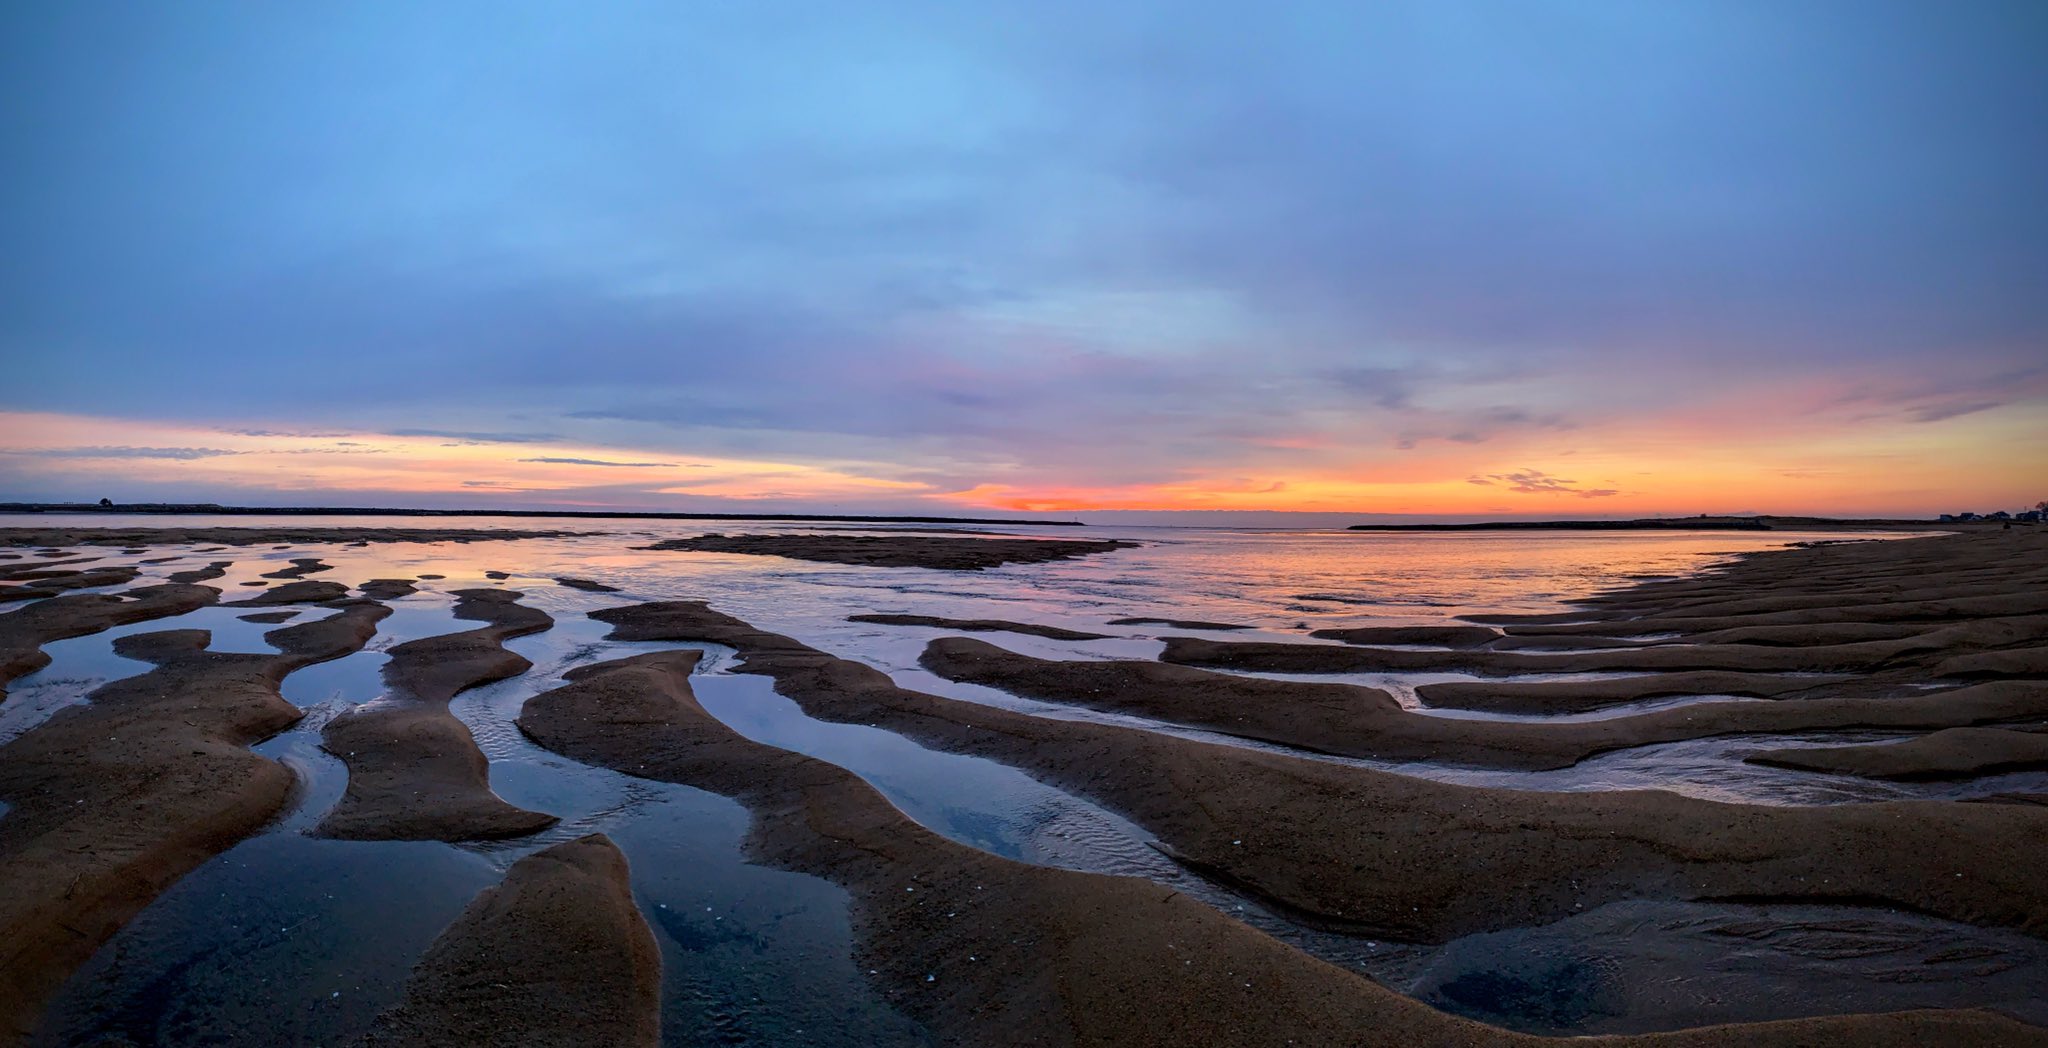 1st Place The dunes abide: sun rising over sand bars in Massachusetts USA by Stephanie Glennon @SMartinGlennon